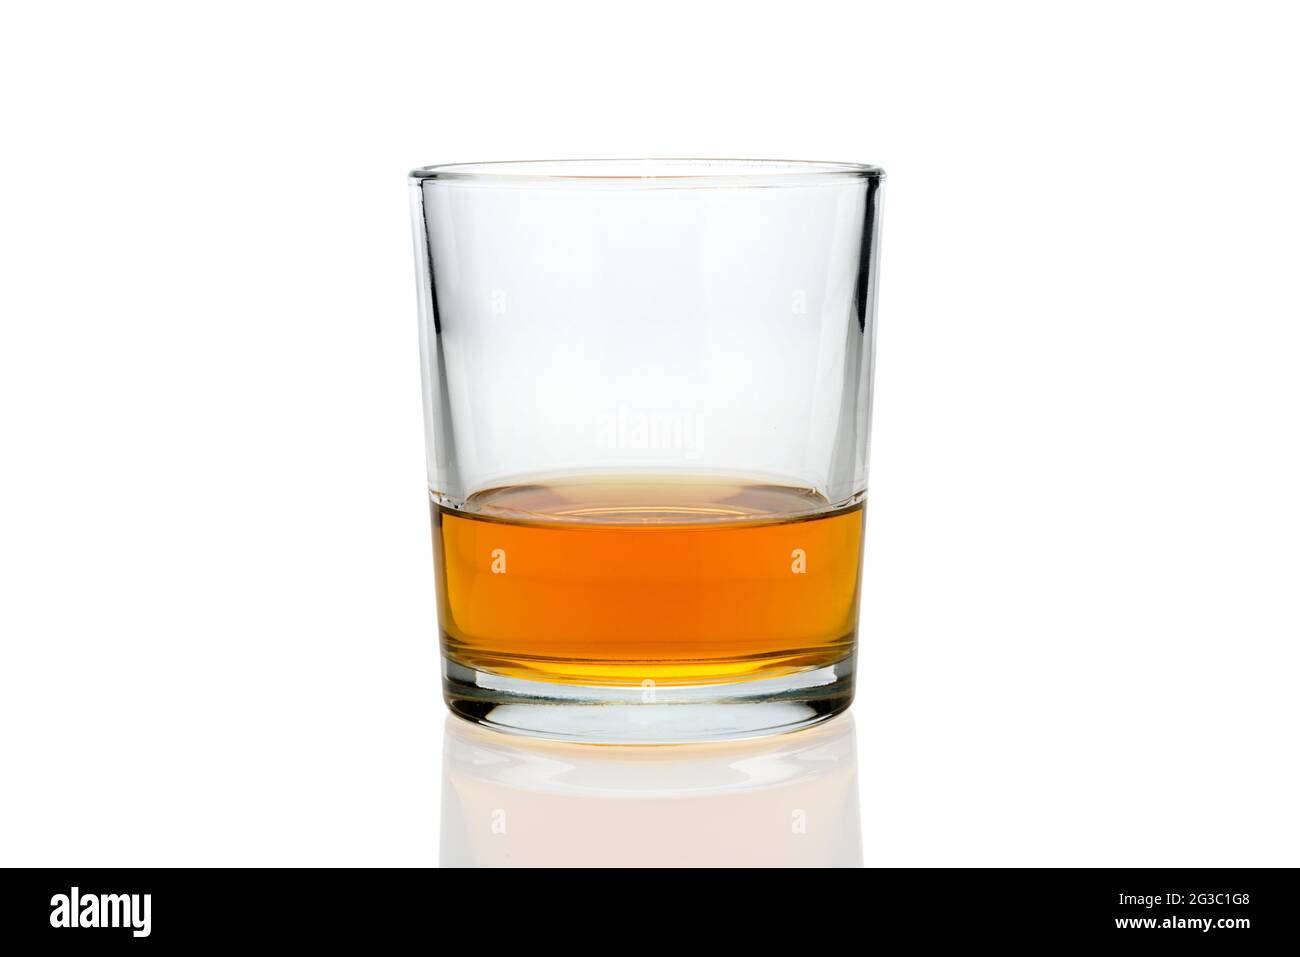 Verre de whisky ou de whisky ou de Kentucky bourbon américain avec son reflet sur l'avion. Isolé sur blanc Banque D'Images